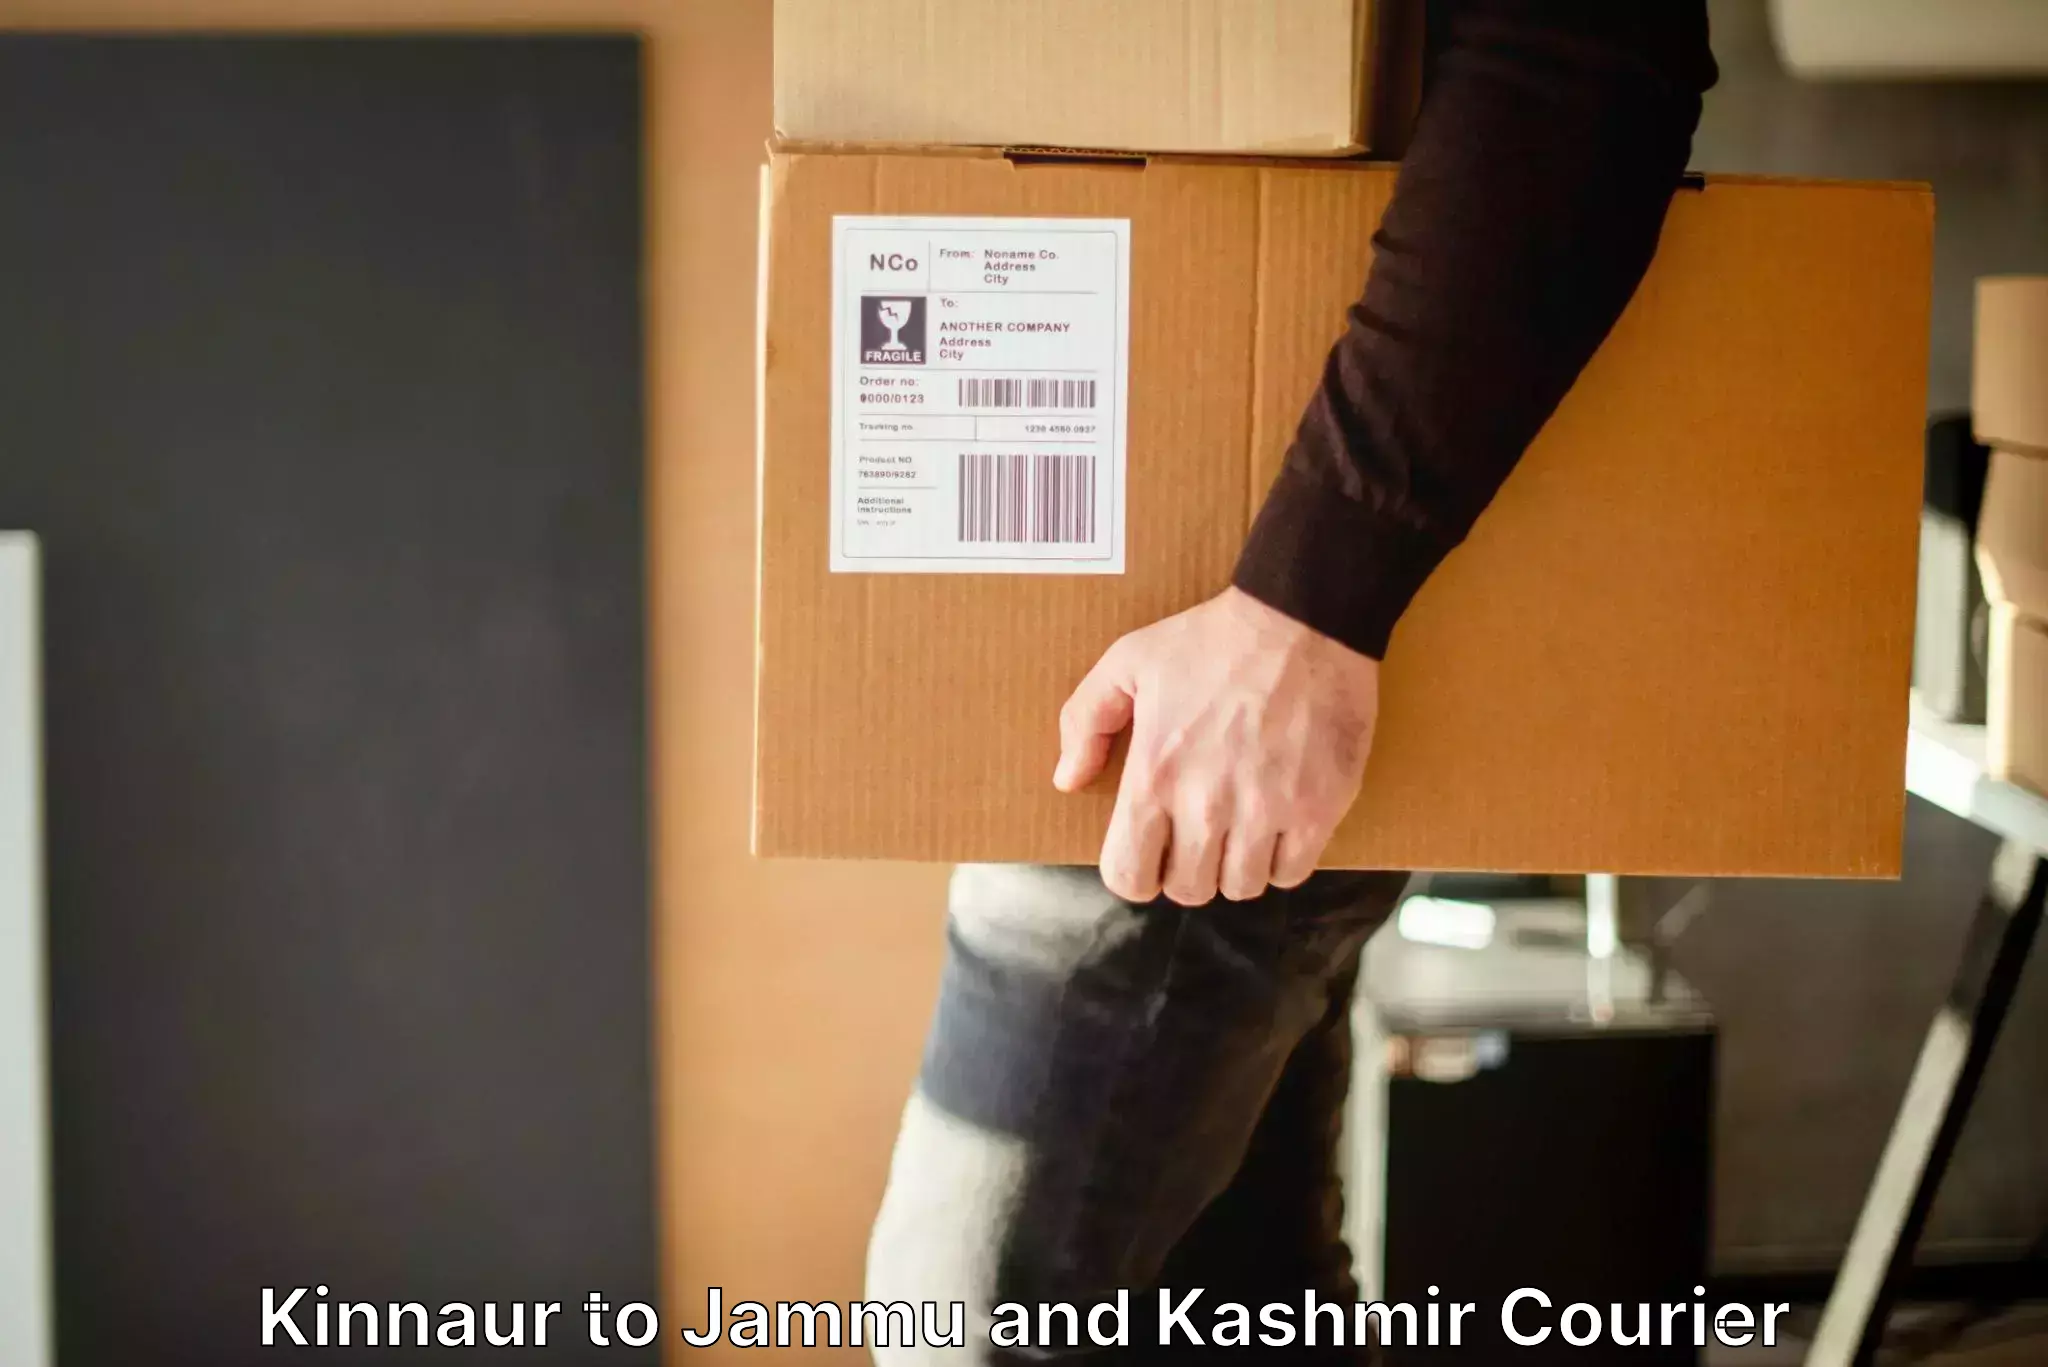 Emergency baggage service Kinnaur to IIT Jammu